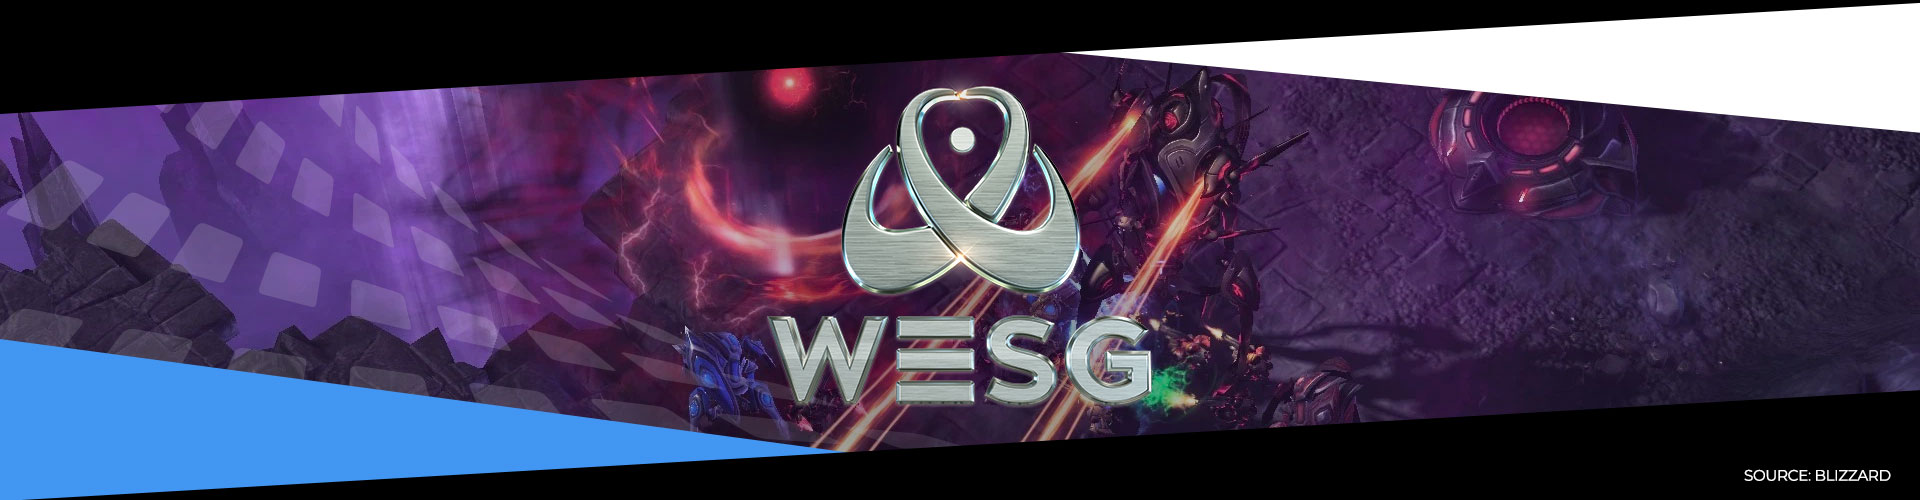 Eventsida om WESG 2018 Starcraft 2 och hur turneringen utspelade sig.